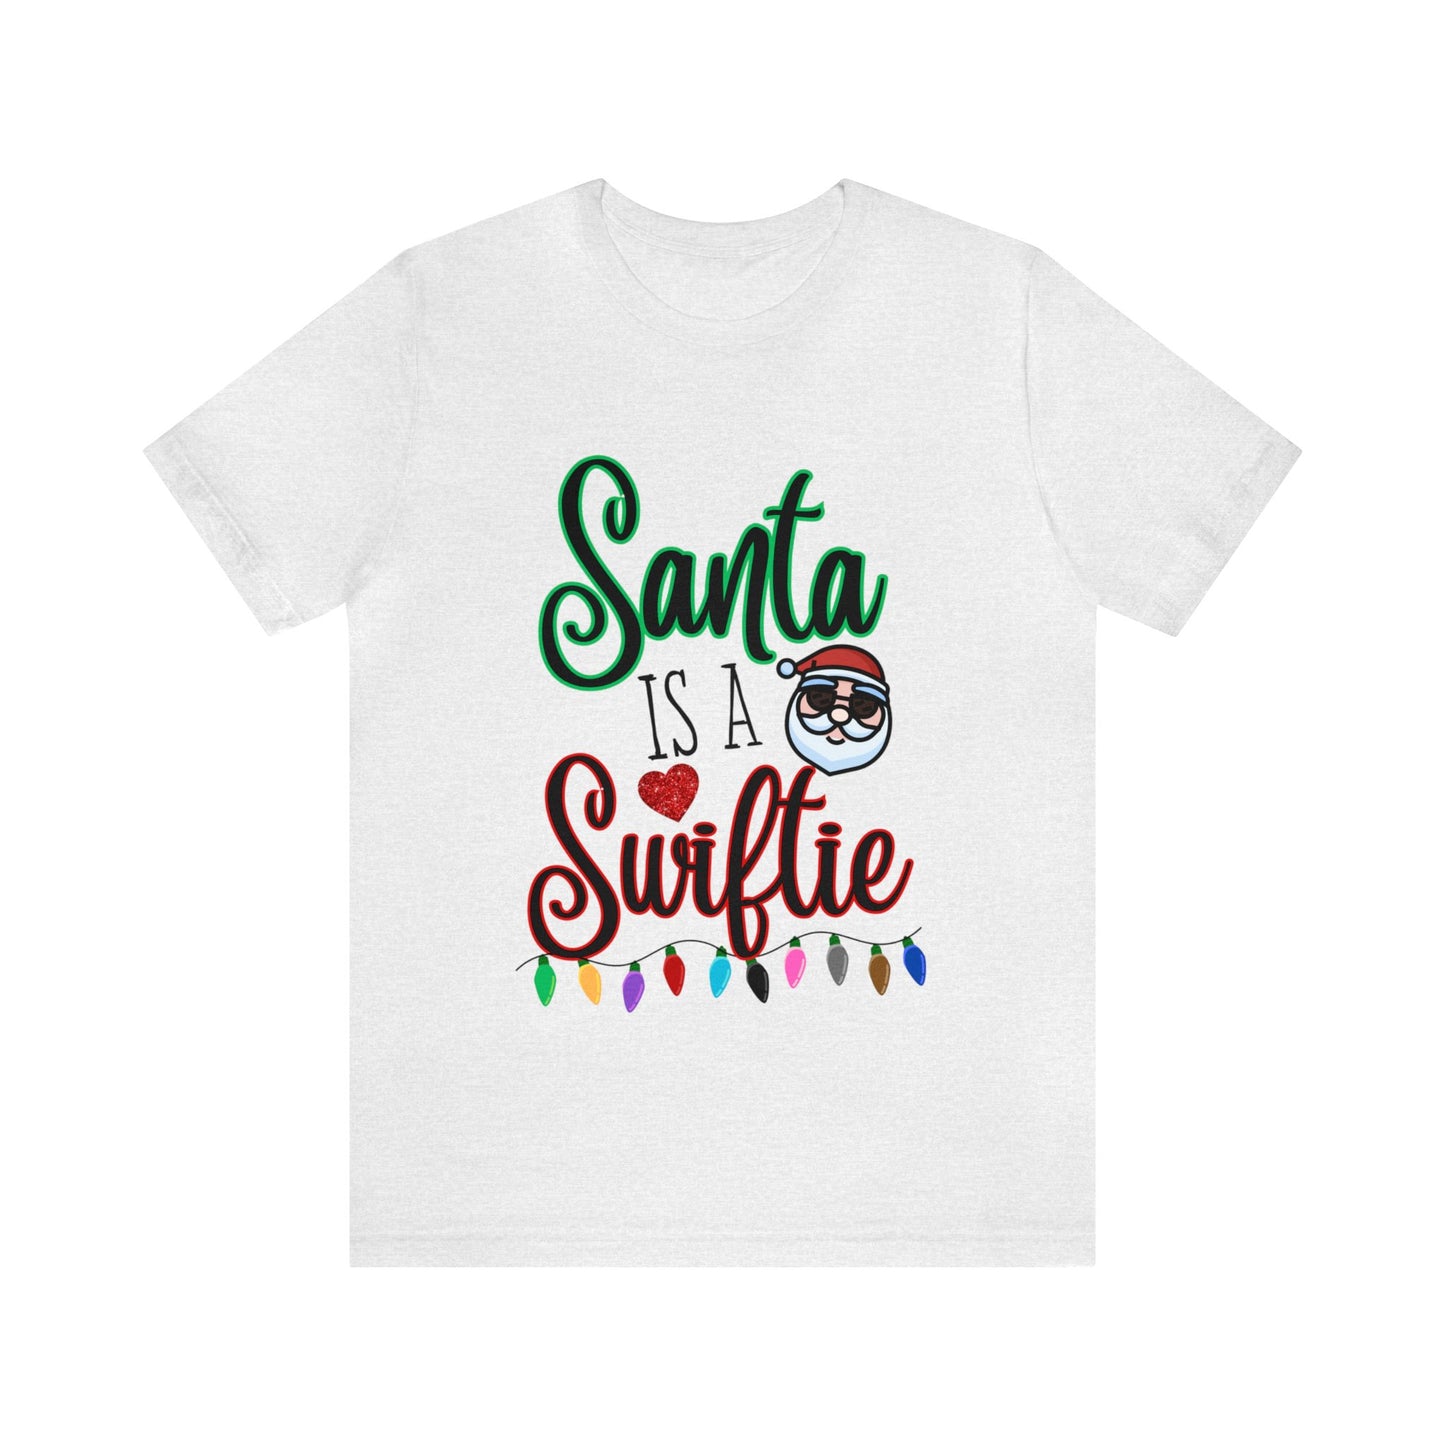 Santa is a Swiftie Unisex Jersey Short Sleeve Tee, Swiftie Shirt, Taylor Swift Fan Gift, Swiftie Christmas Shirt, Swiftie Gift